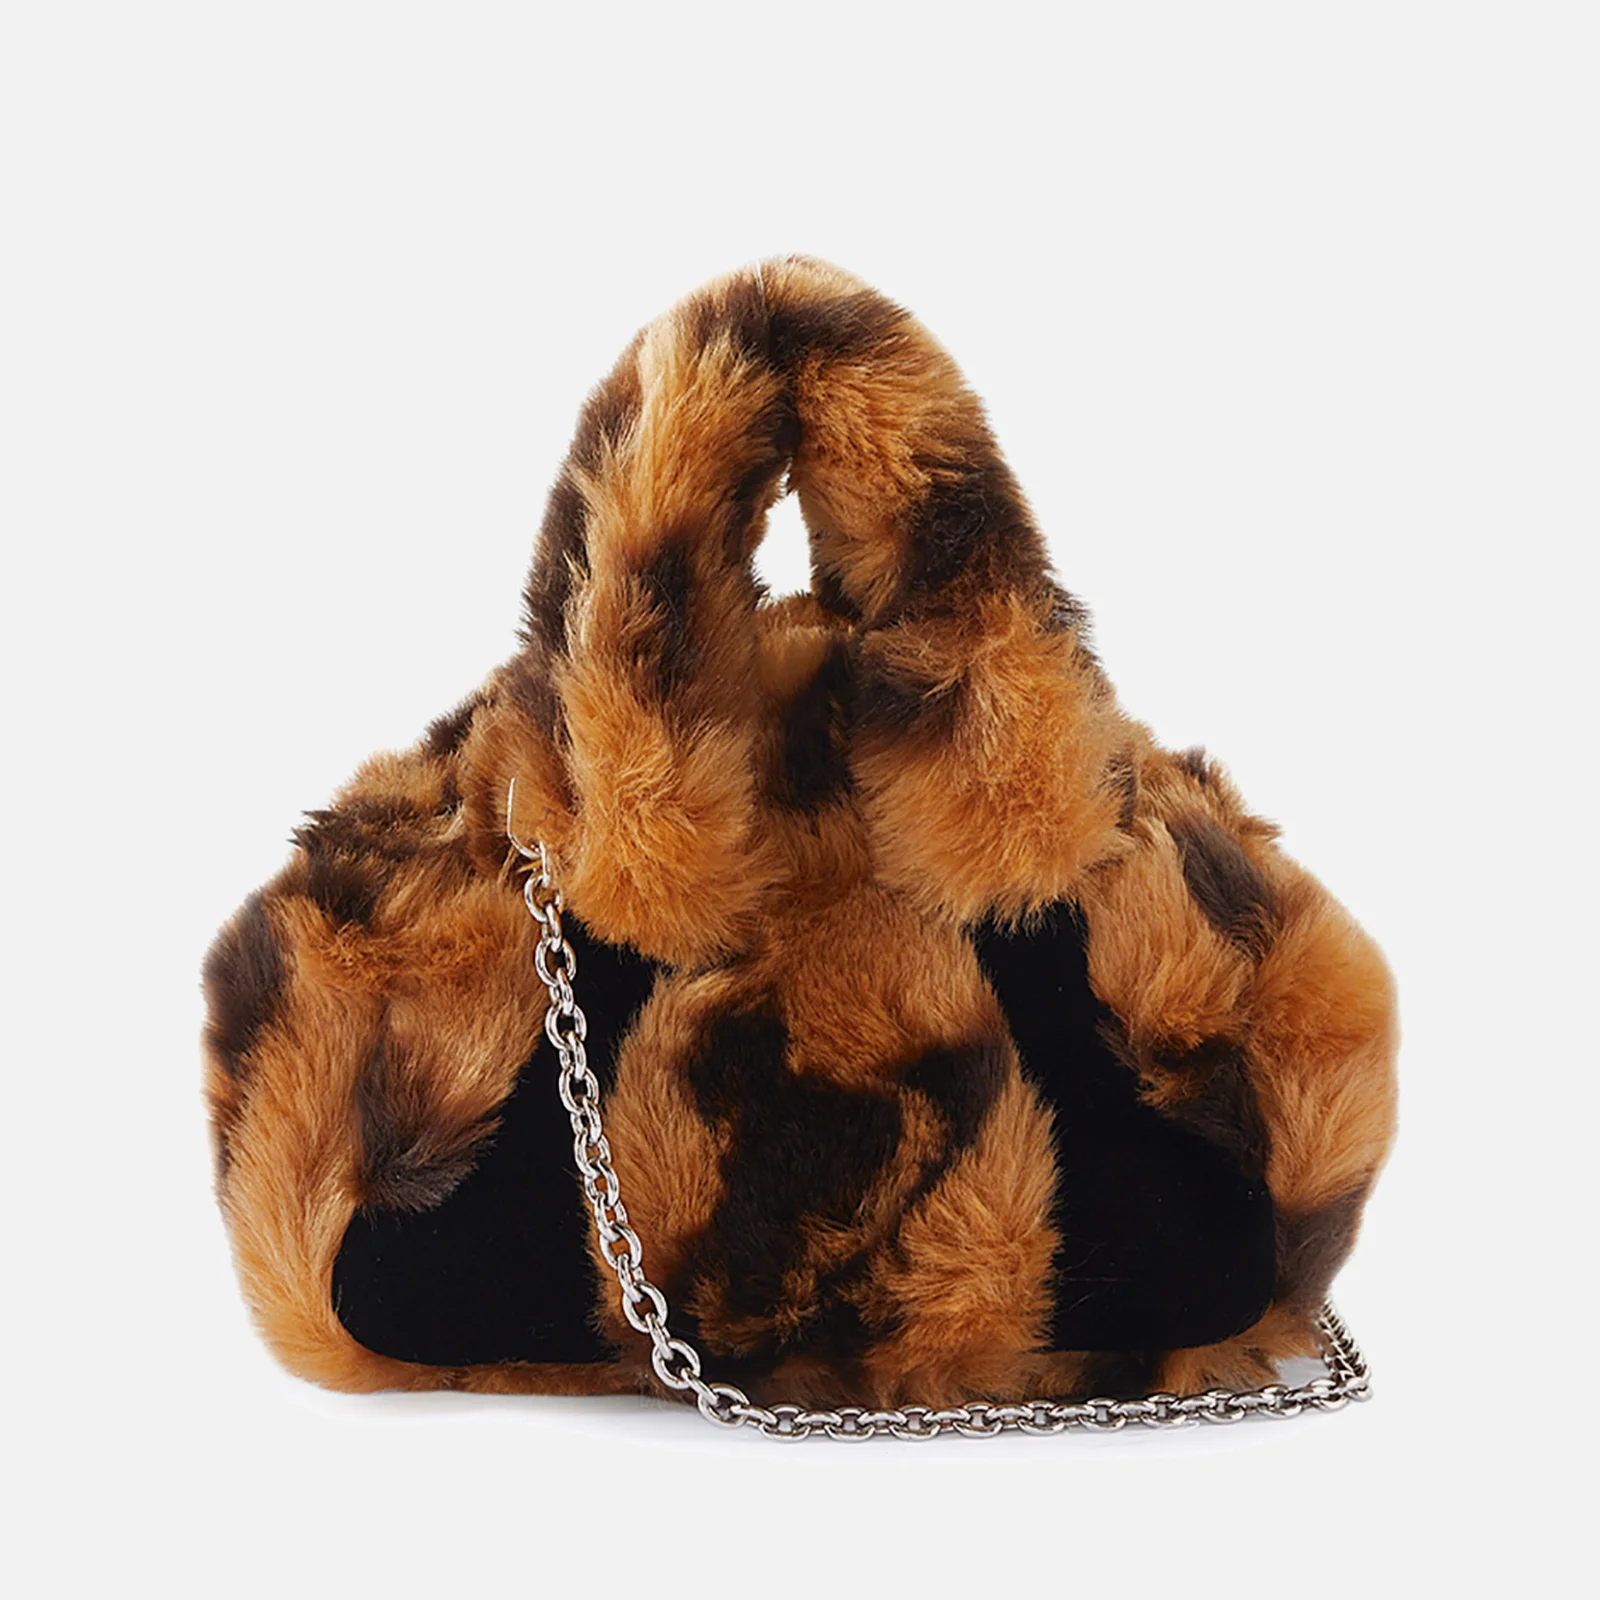 Vivienne Westwood Archive Yasmine Faux Fur Mini Bag Image 1